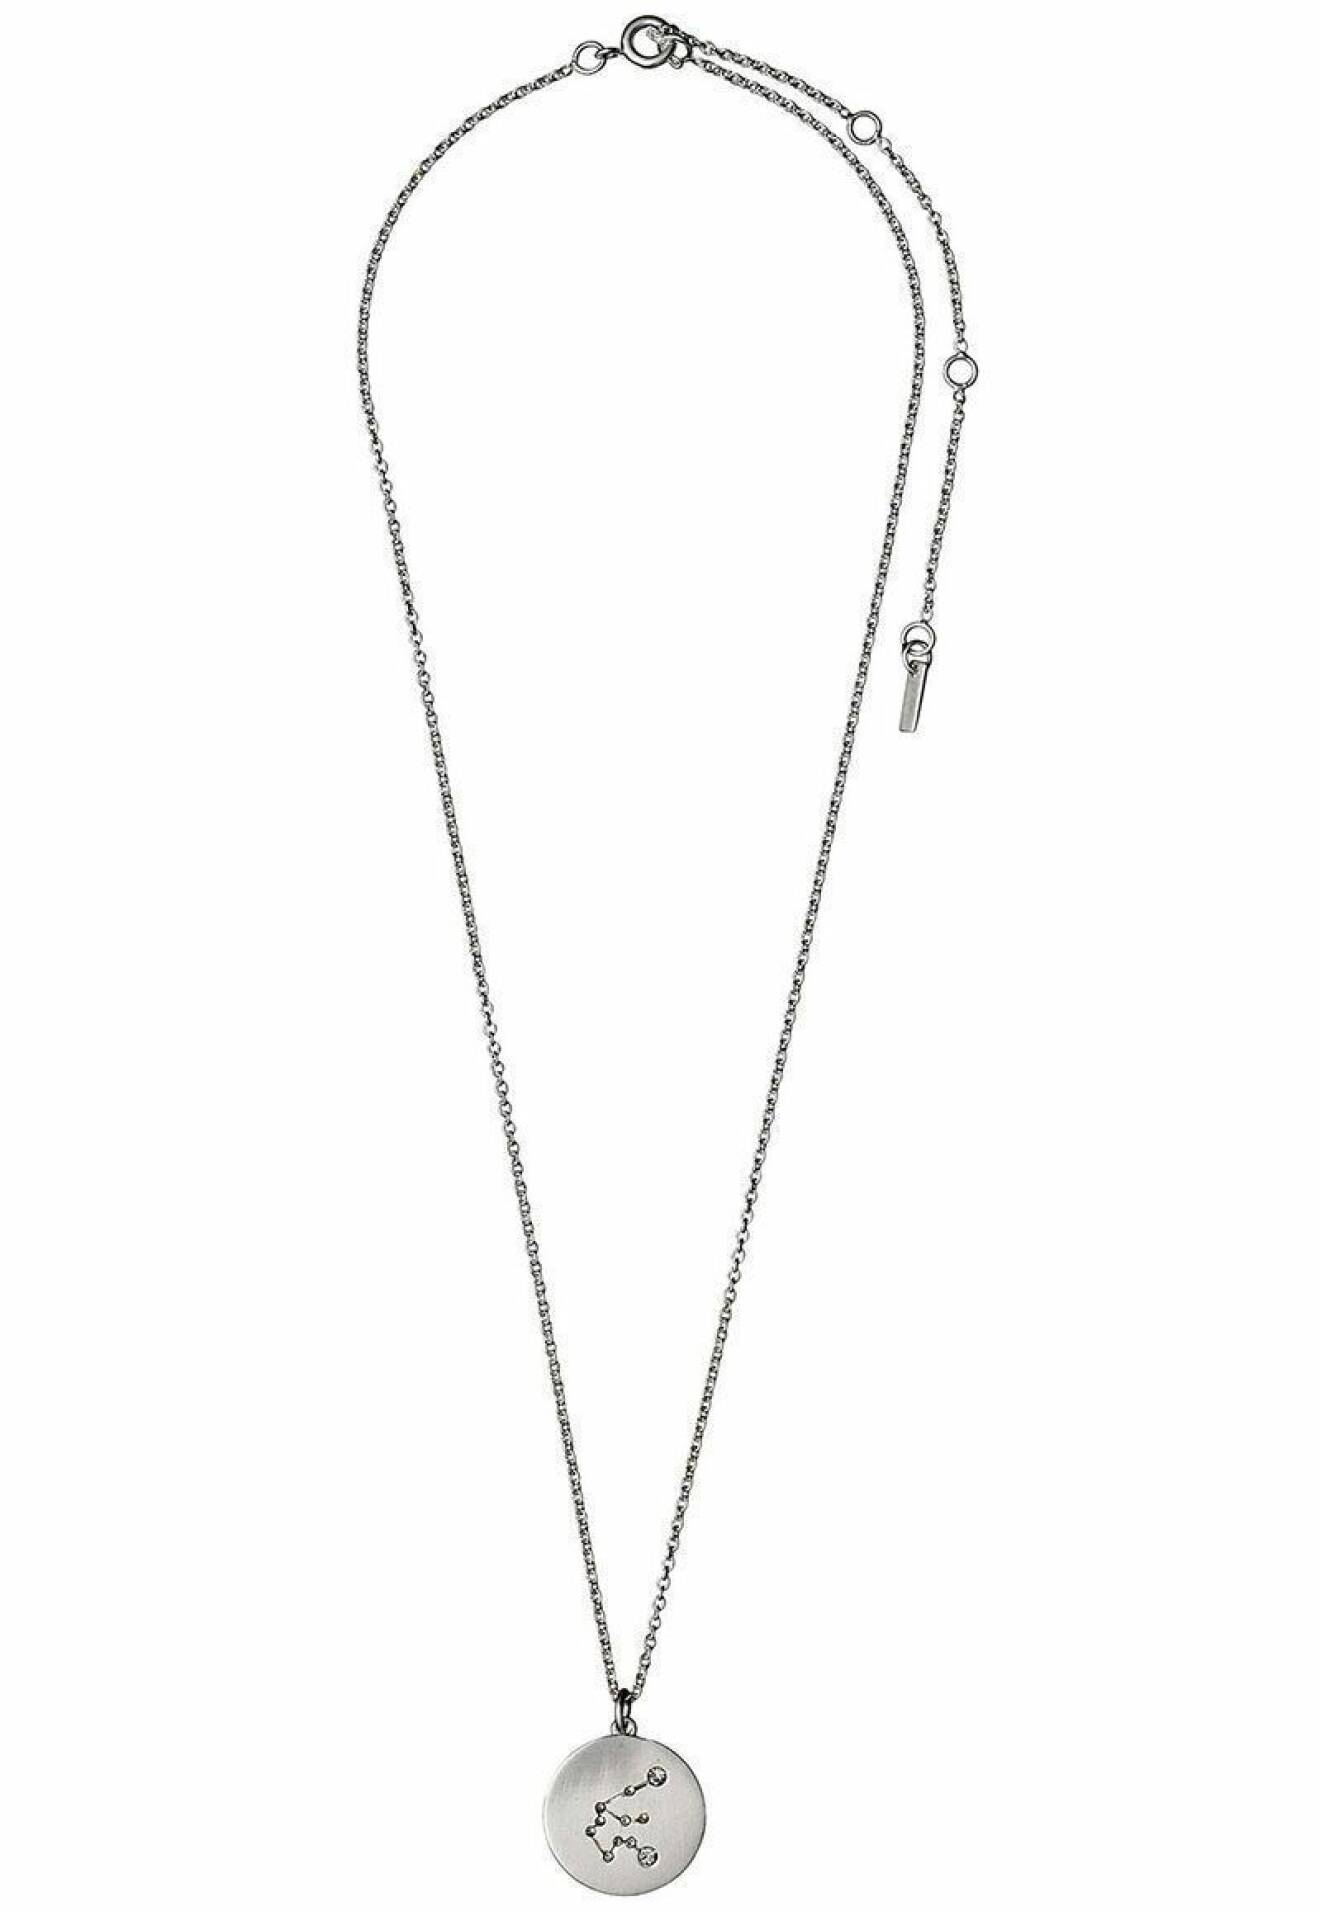 Halsband med stjärntecken från Pilgrim, Vattumannen